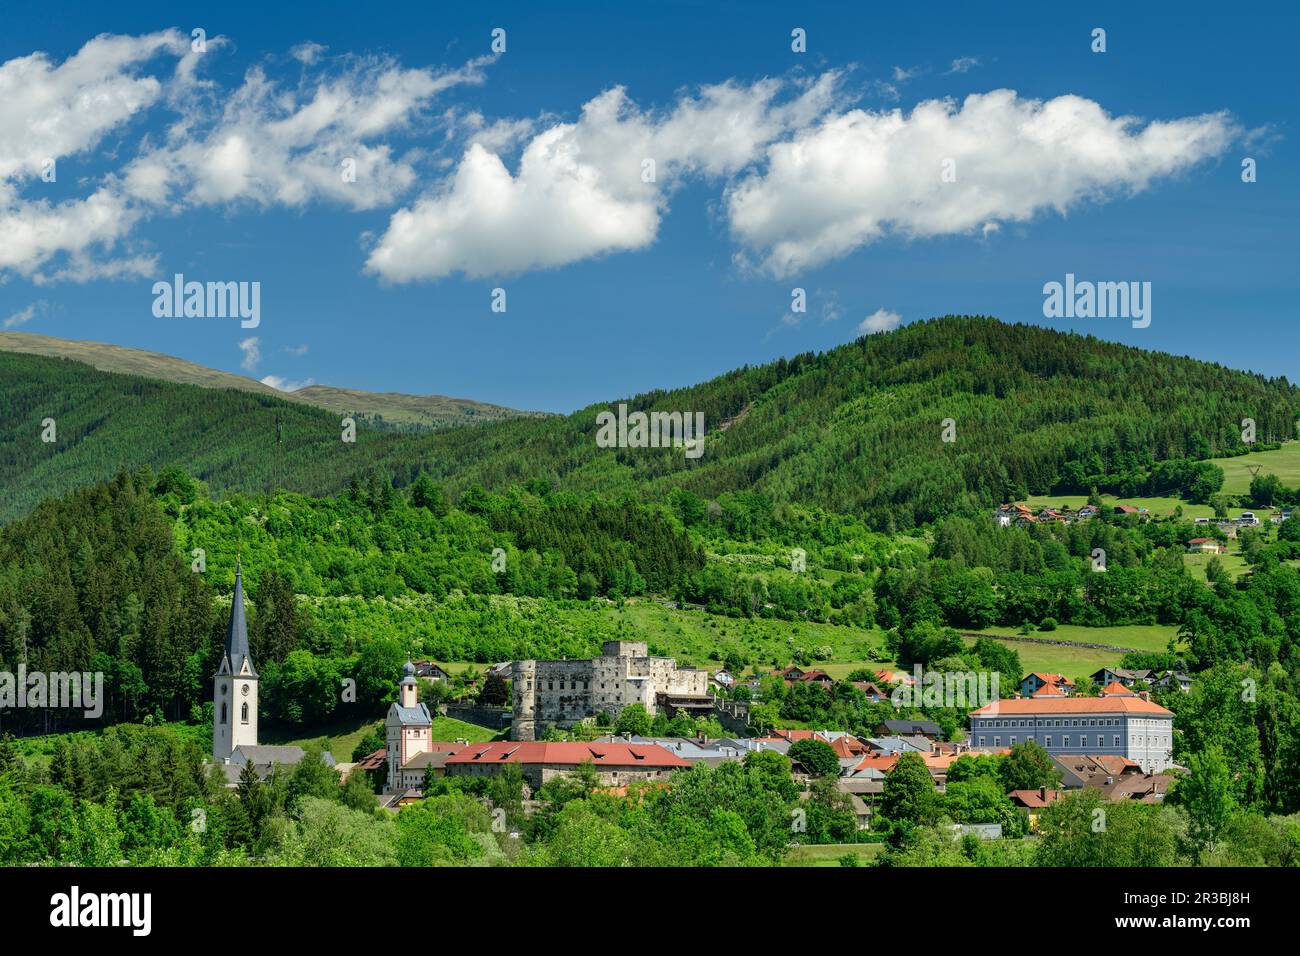 Austria, Carinzia, Gmund, Città con colline boscose sullo sfondo Foto Stock